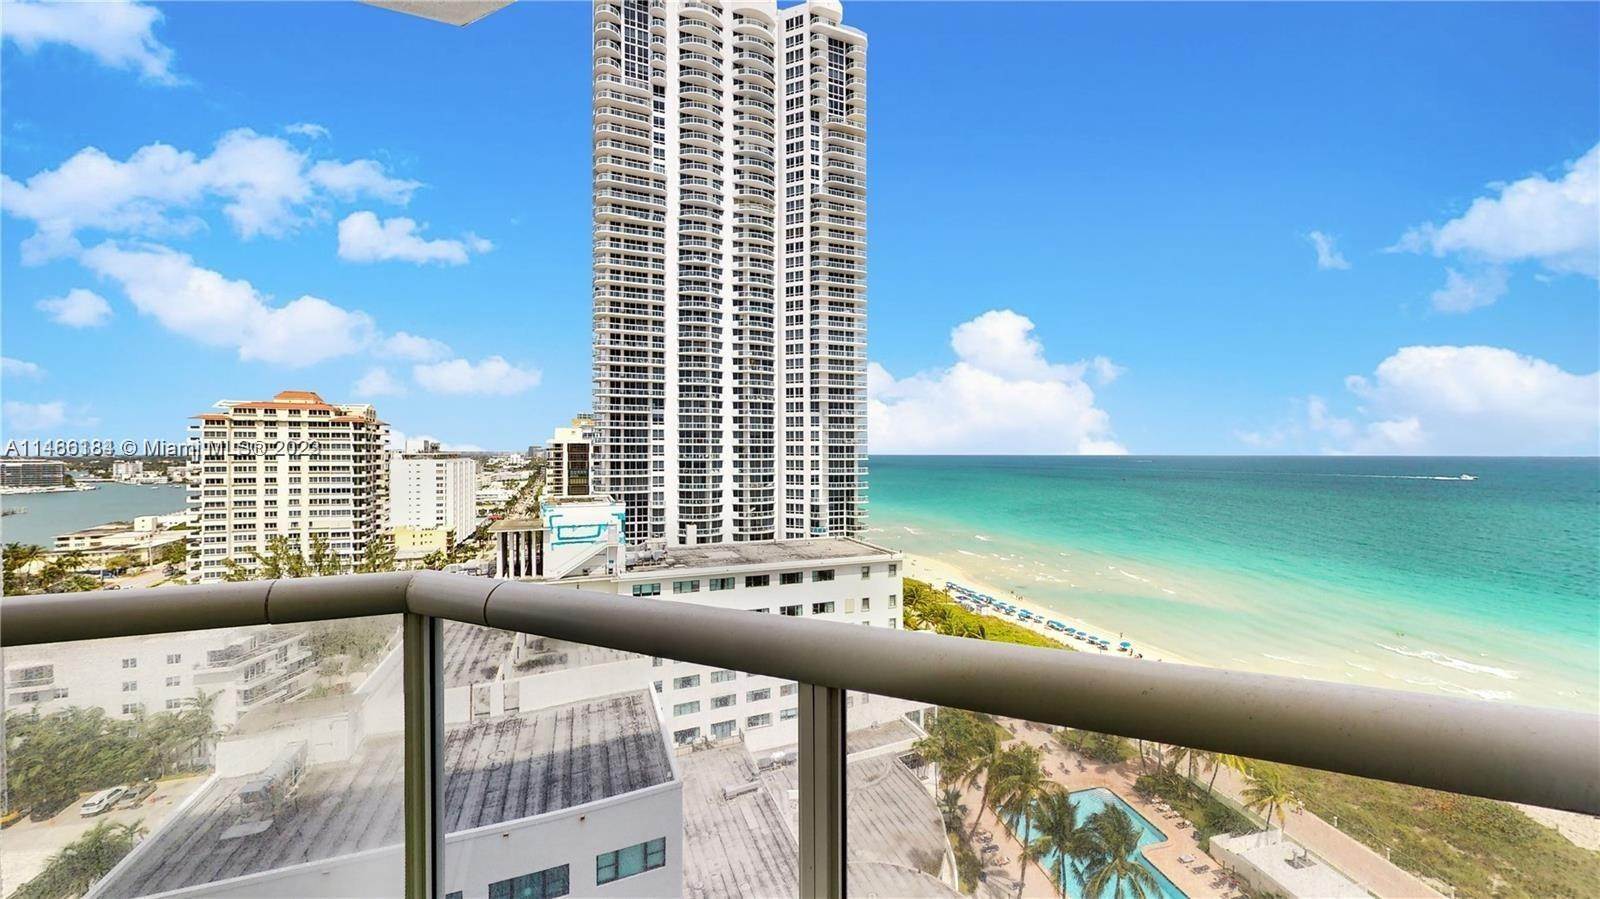 Eigentumswohnung für Verkauf beim Millionaires Row, Miami Beach, FL 33141